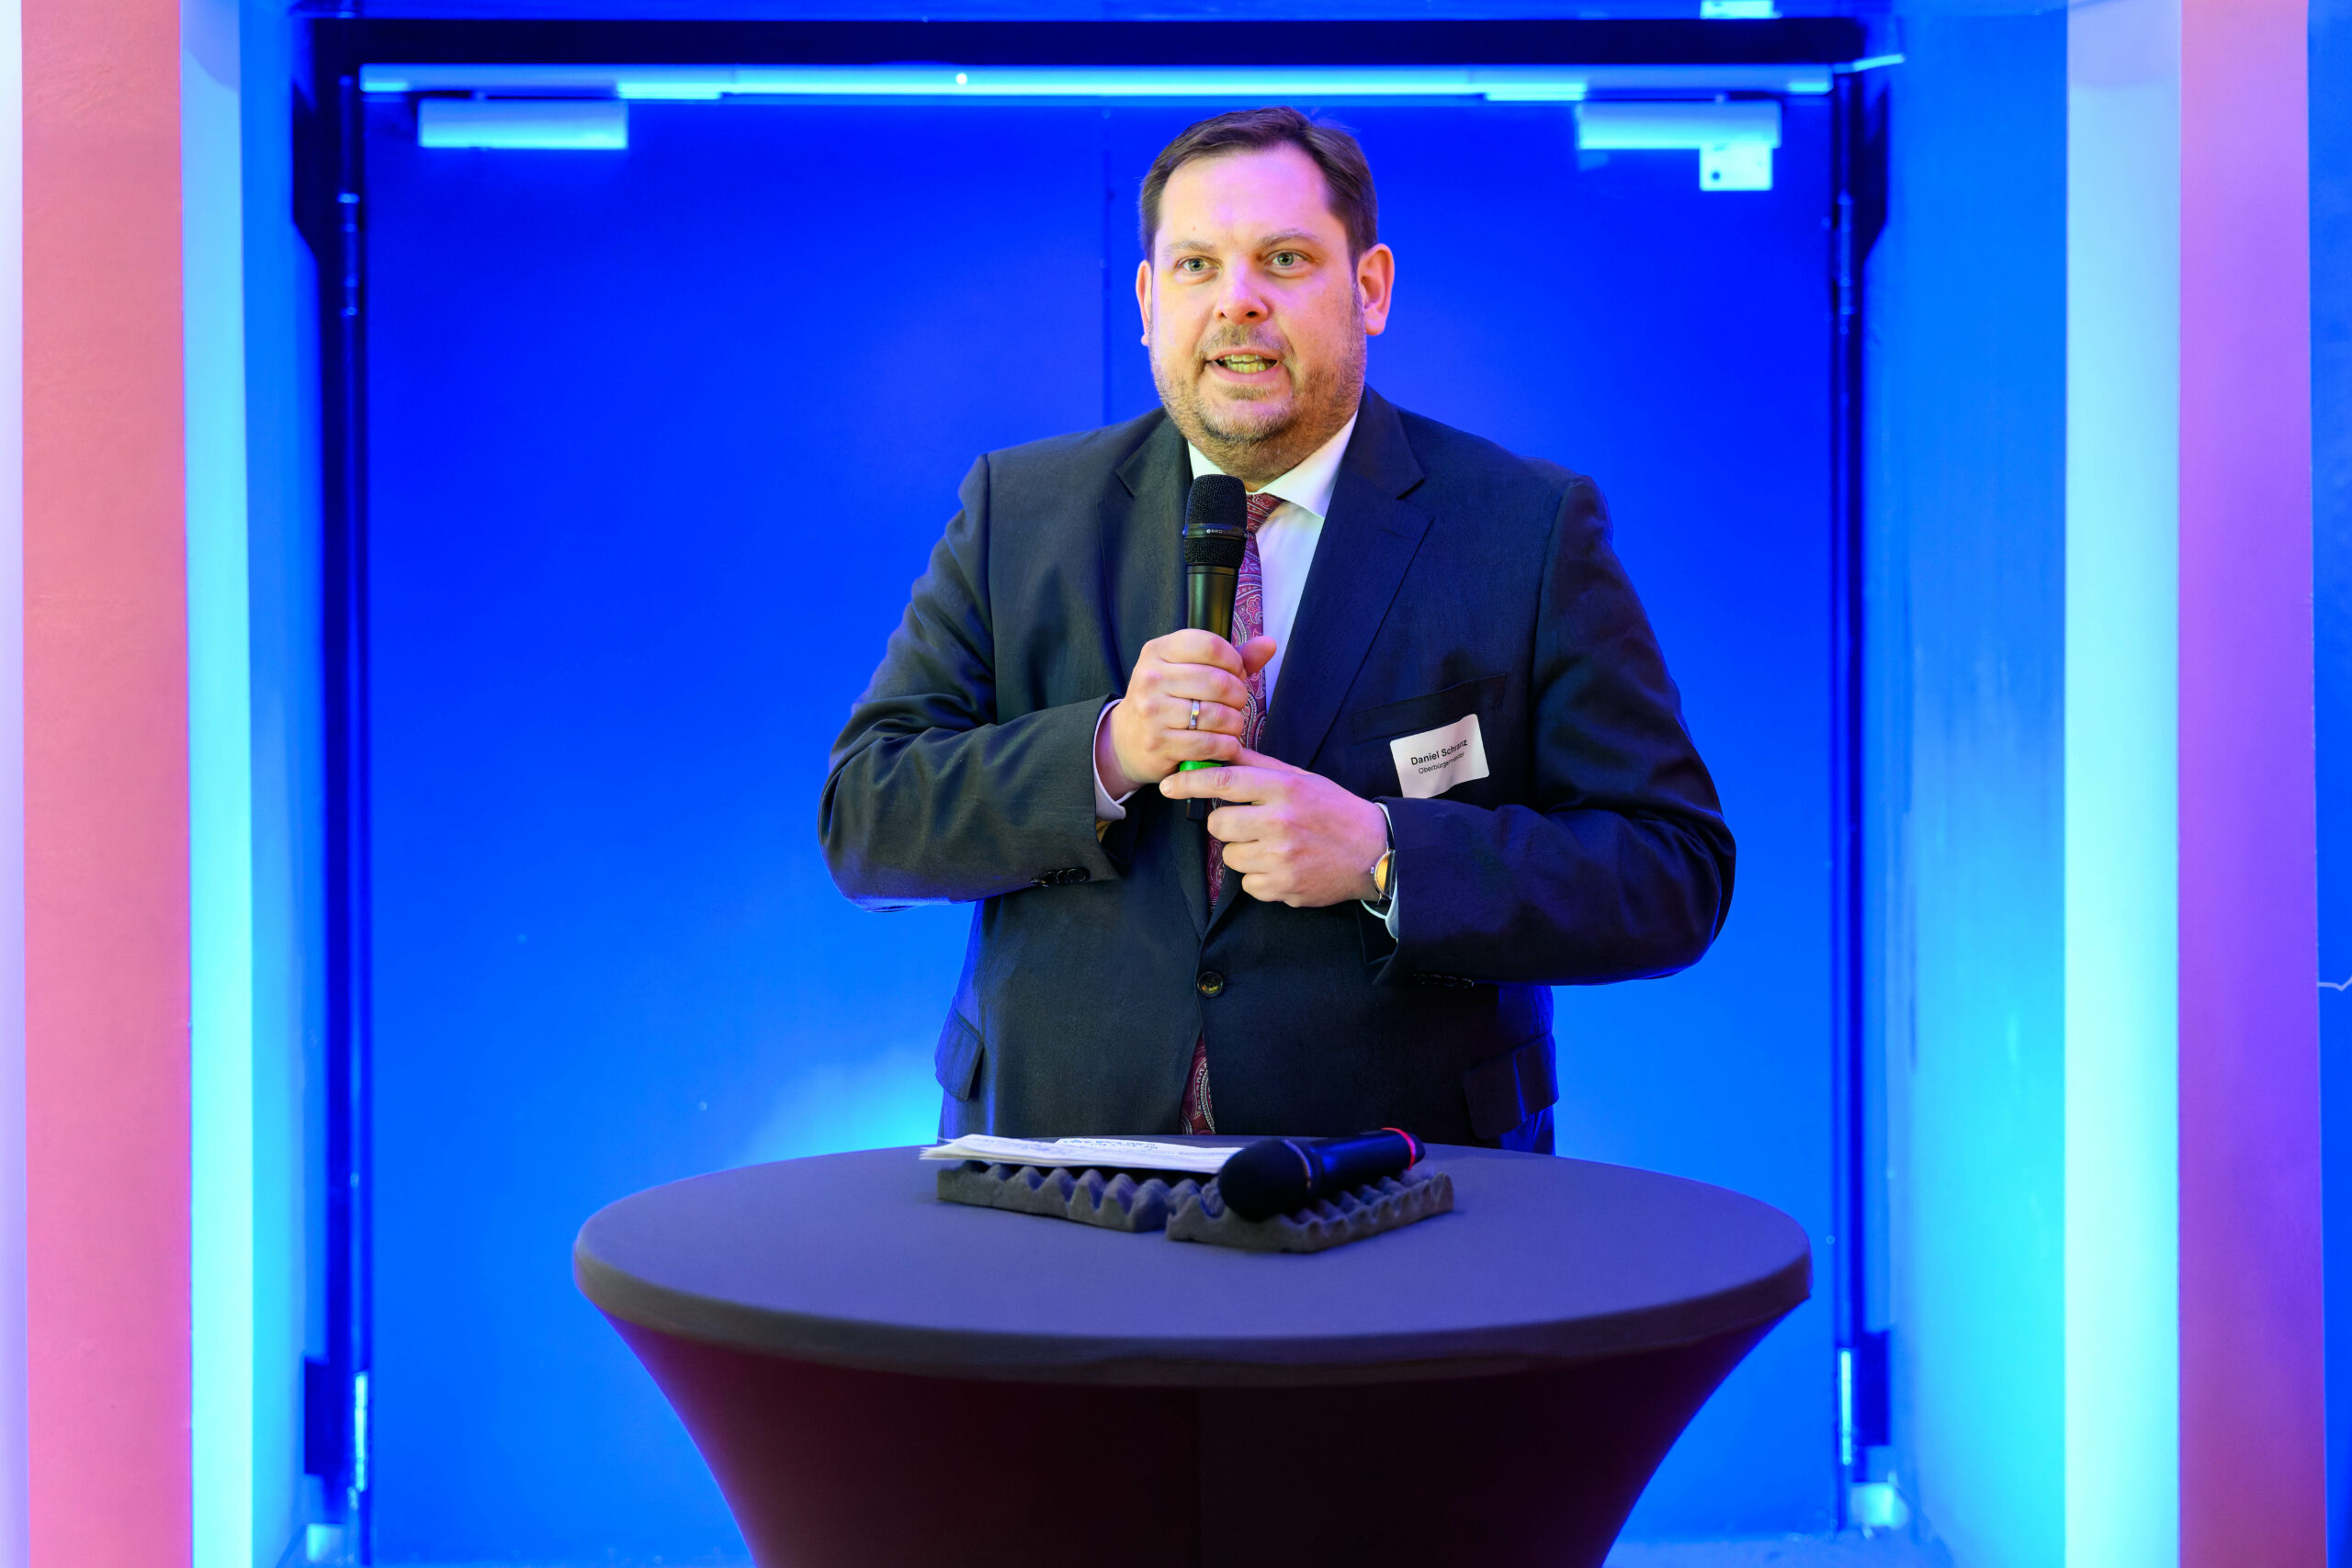 Wirtschaftsempfang: Oberbürgermeister Schranz begrüßt rund 200 Gäste im Metronom Theater